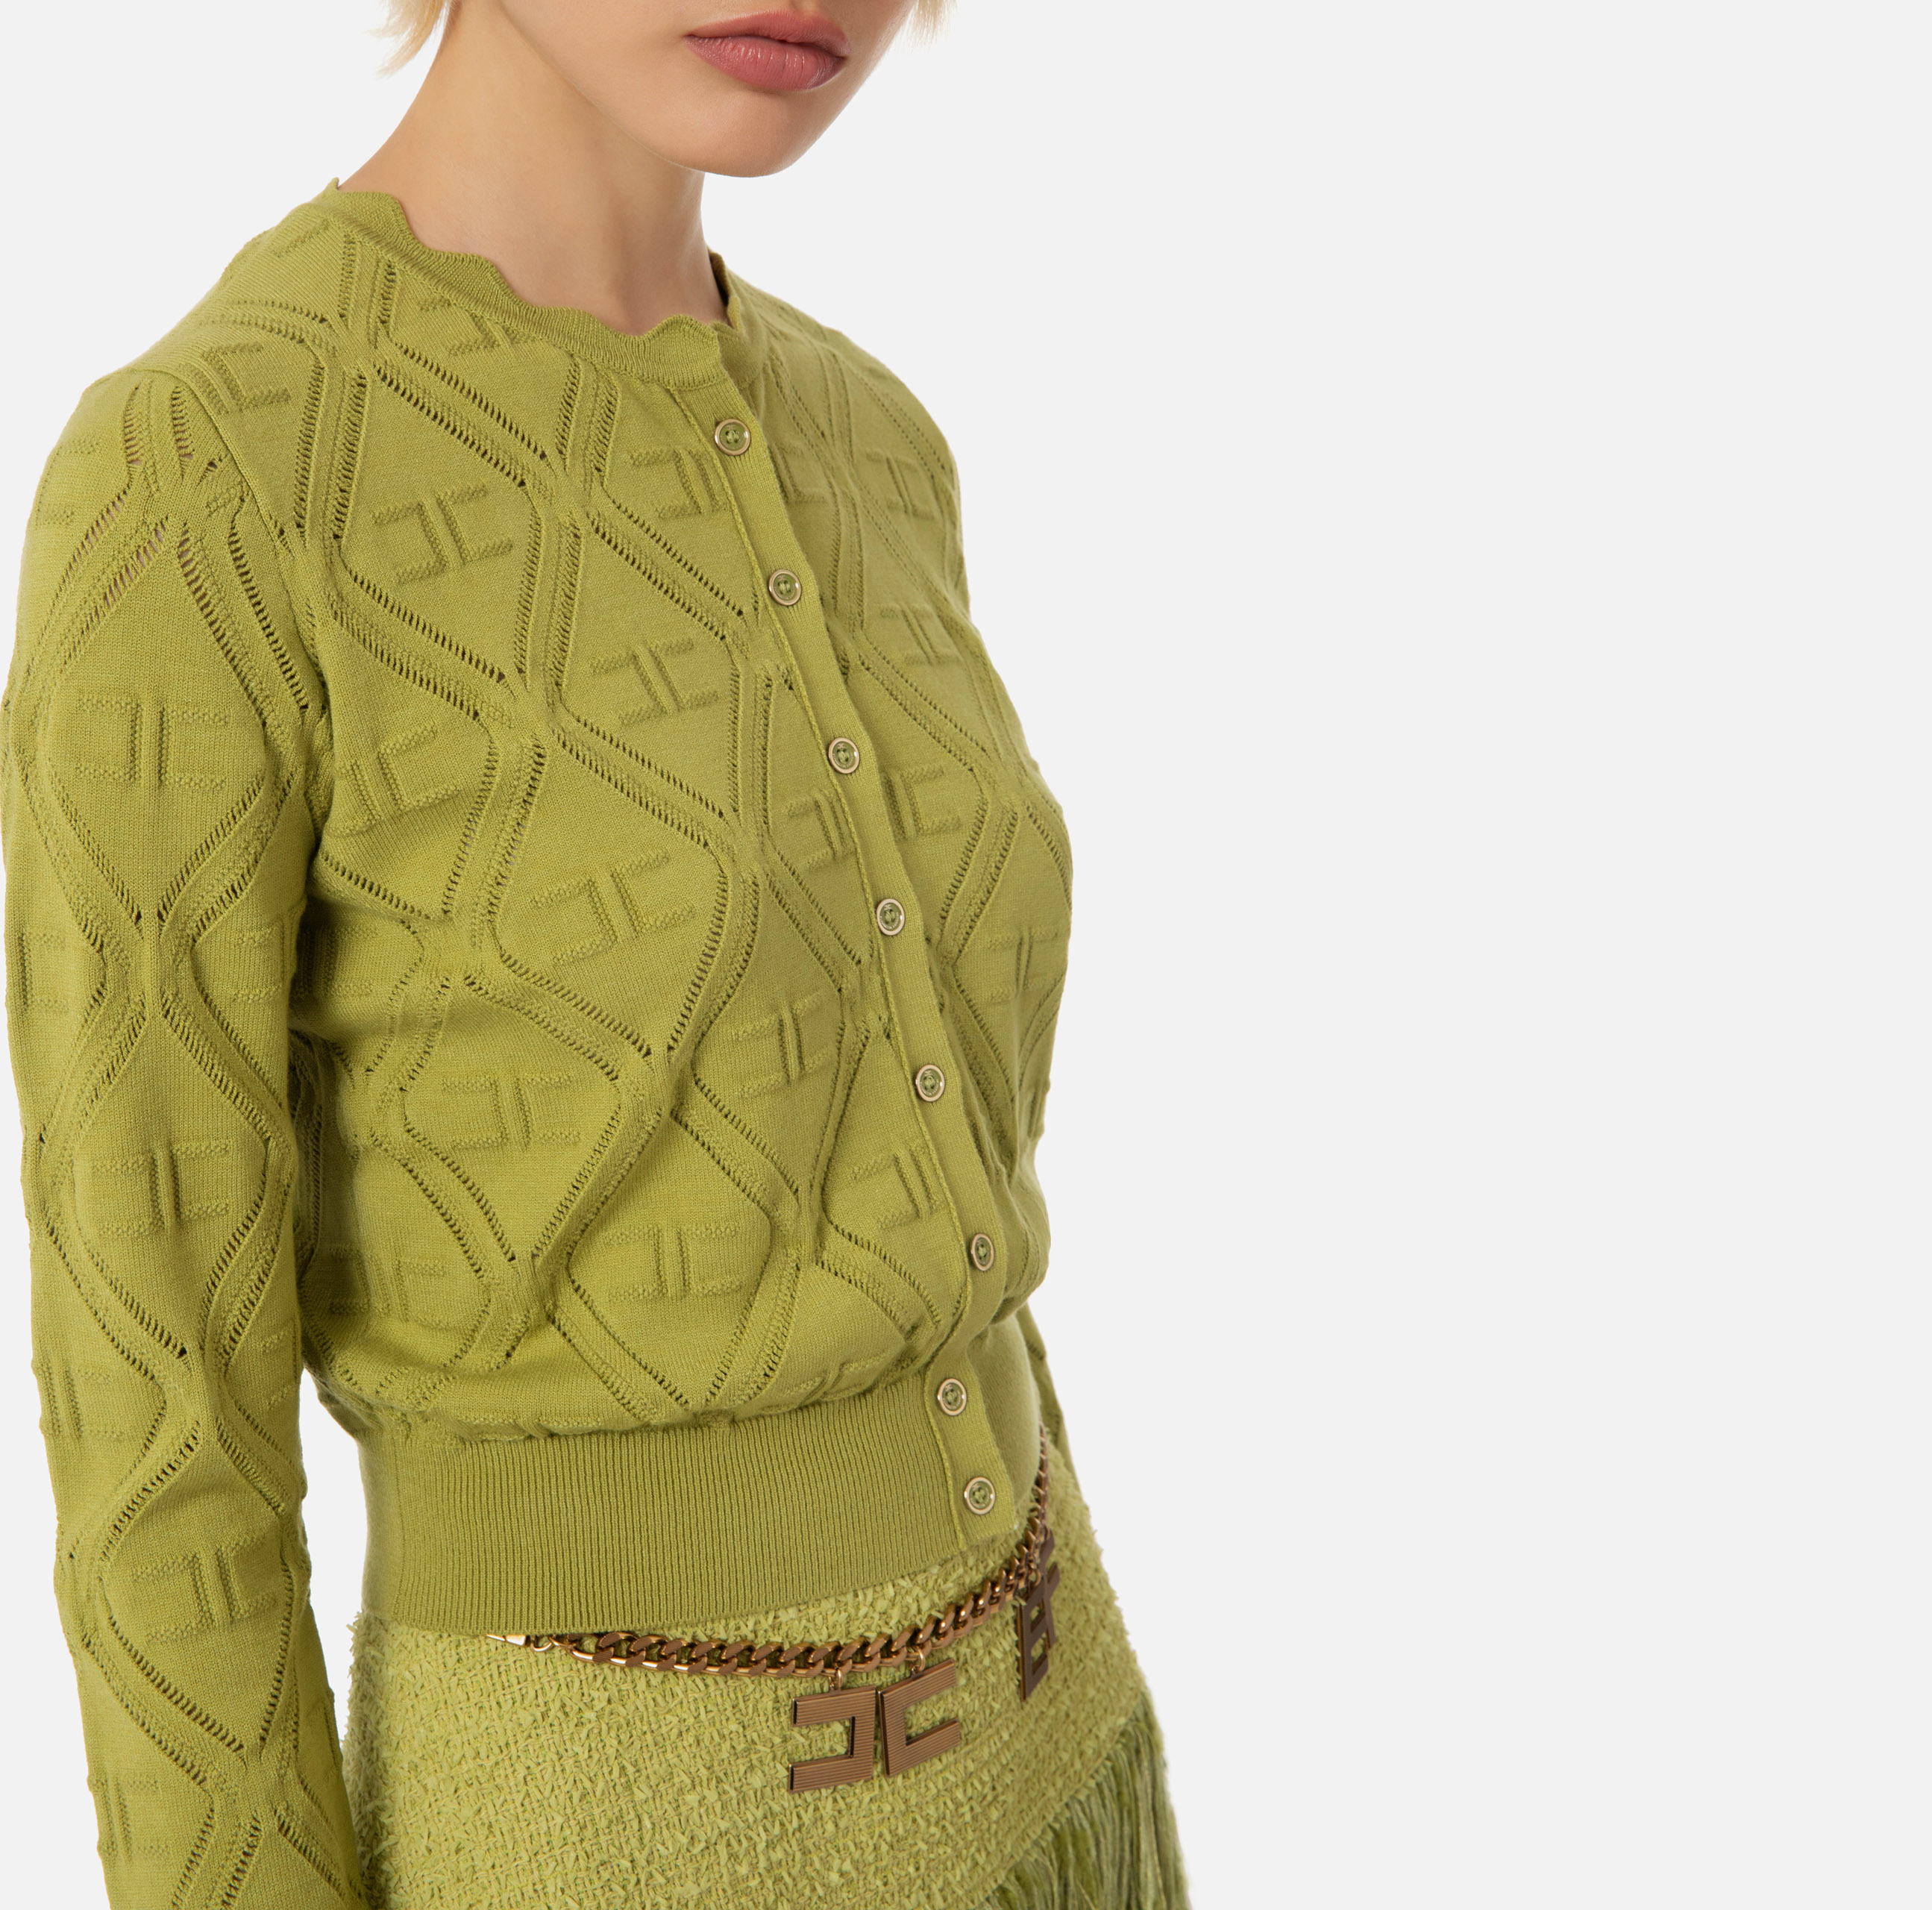 Knit cardigan in lace stitch - Elisabetta Franchi